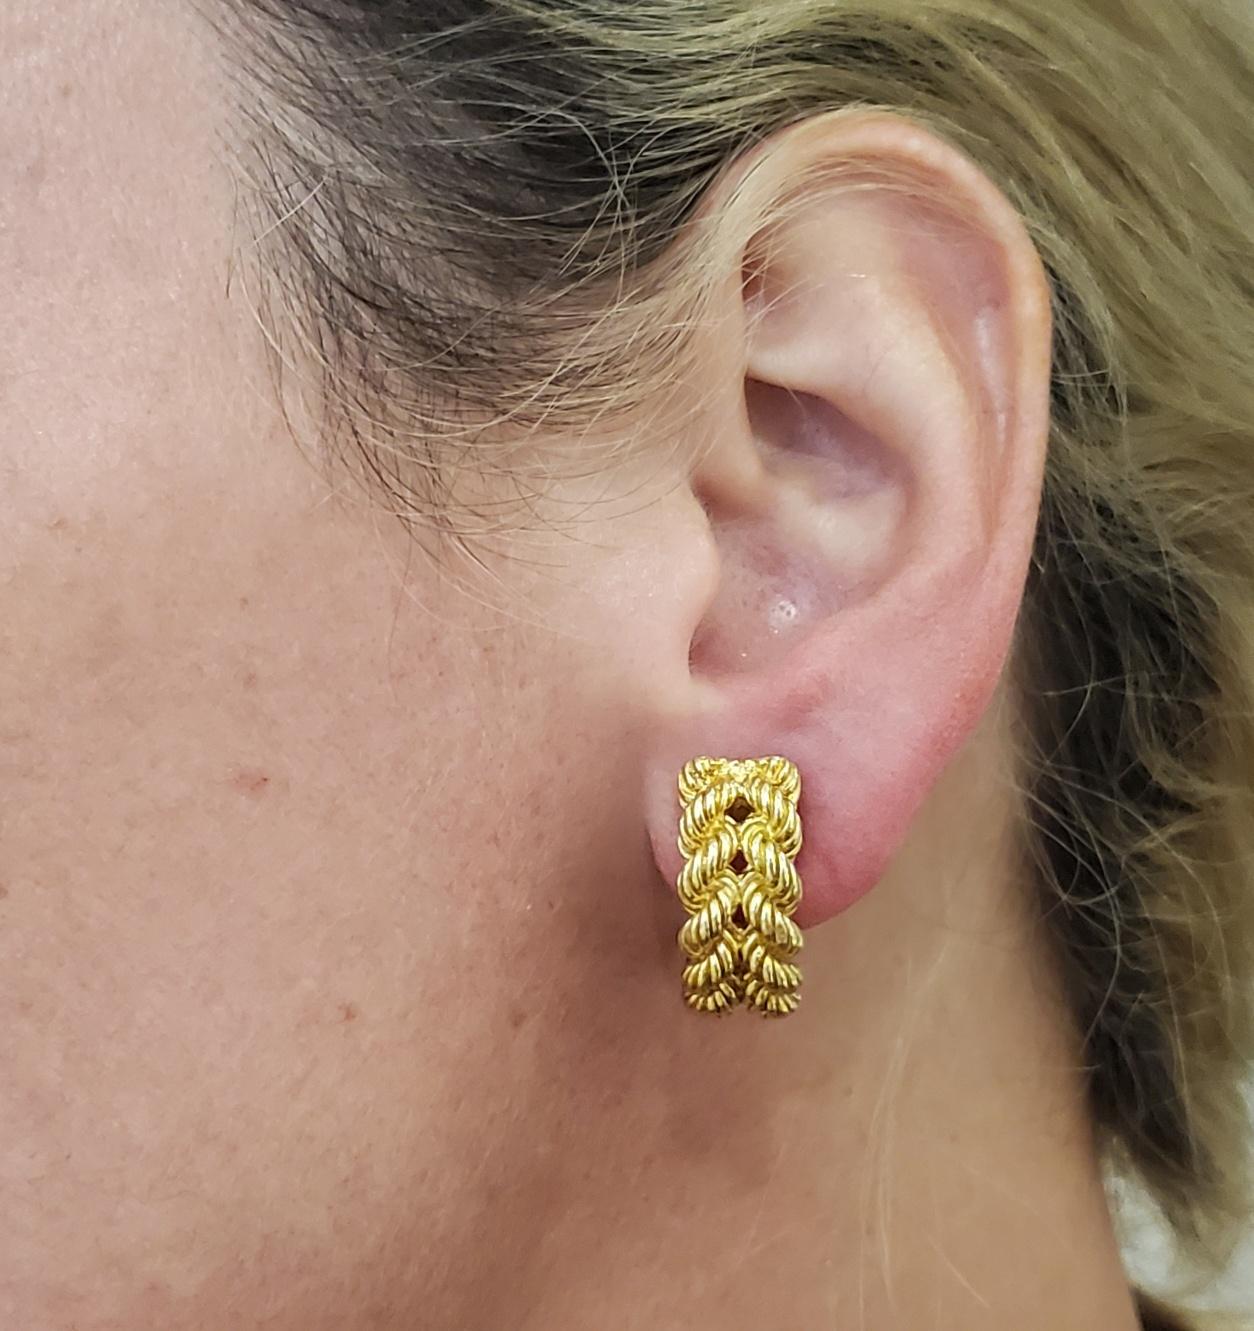 Clips sur des boucles d'oreilles conçues par Hermès.

Magnifique paire de boucles d'oreilles à clip, créée à Paris, en France, par la maison de luxe Hermès, dans les années 1970. Elles ont été réalisées avec des motifs de fils torsadés en or jaune